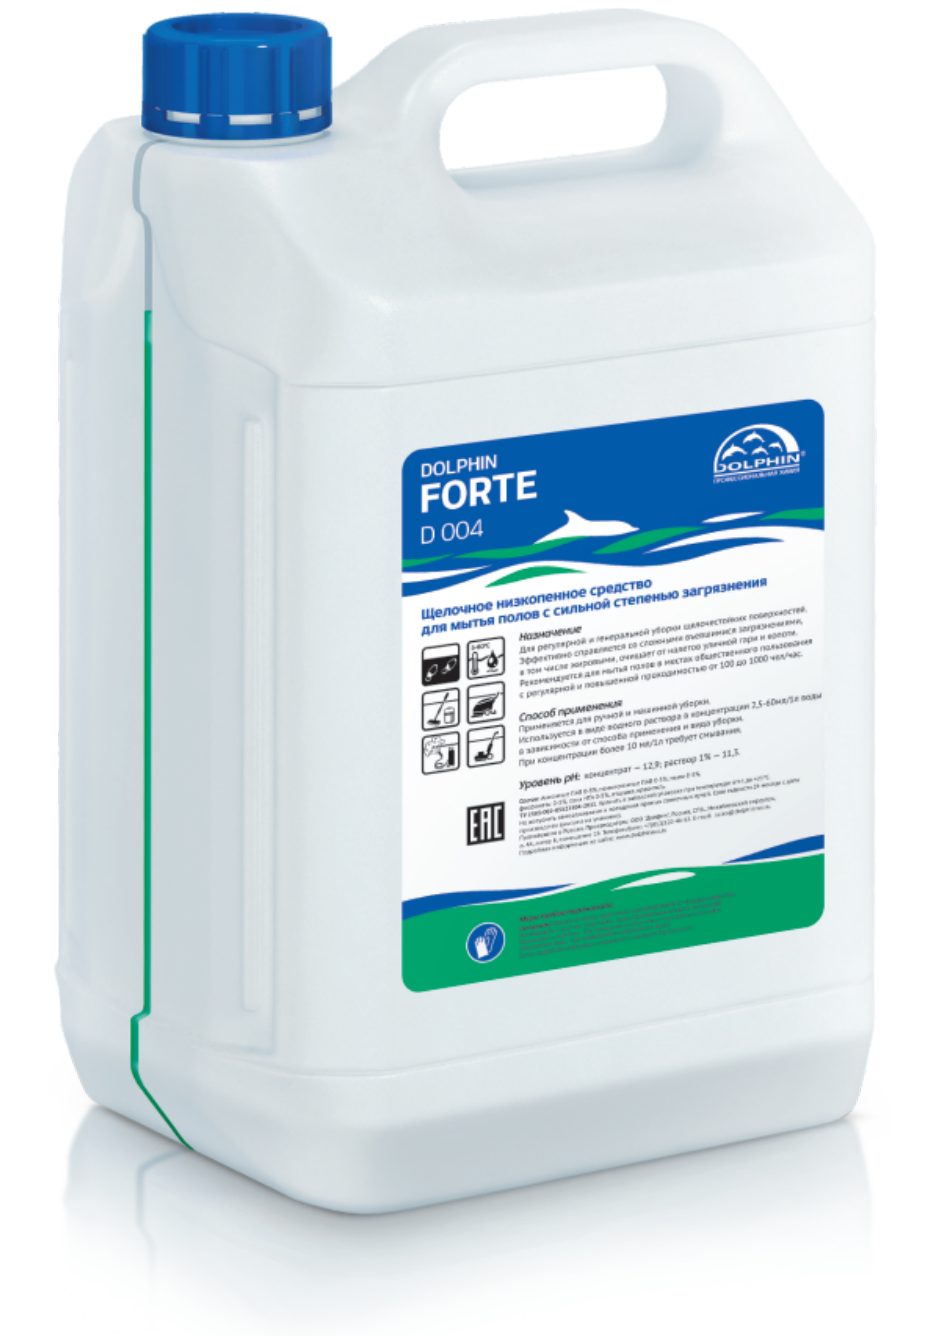 Средство для мытья полов Forte Dolphin, 5 л, 5.1 кг